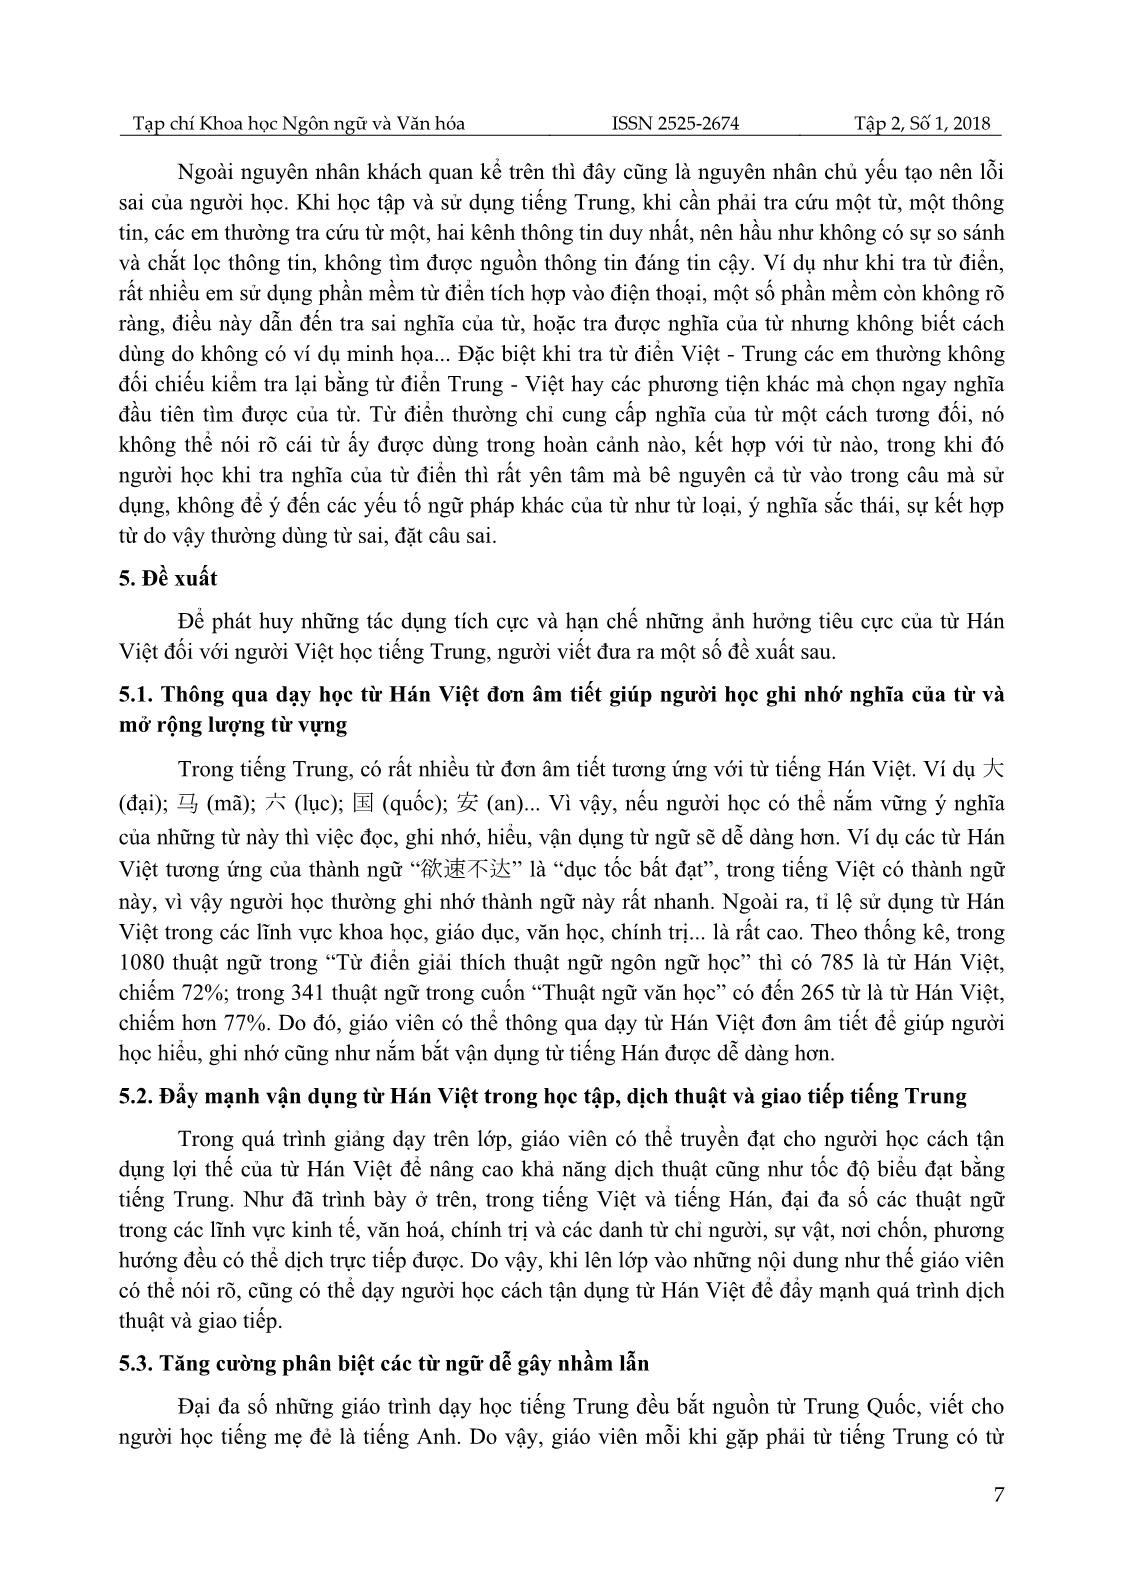 Khảo sát lỗi sai của sinh viên khoa Ngoại ngữ, Đại học Thái Nguyên khi dịch trực tiếp từ Hán Việt sang tiếng Trung và giải pháp khắc phục trang 7